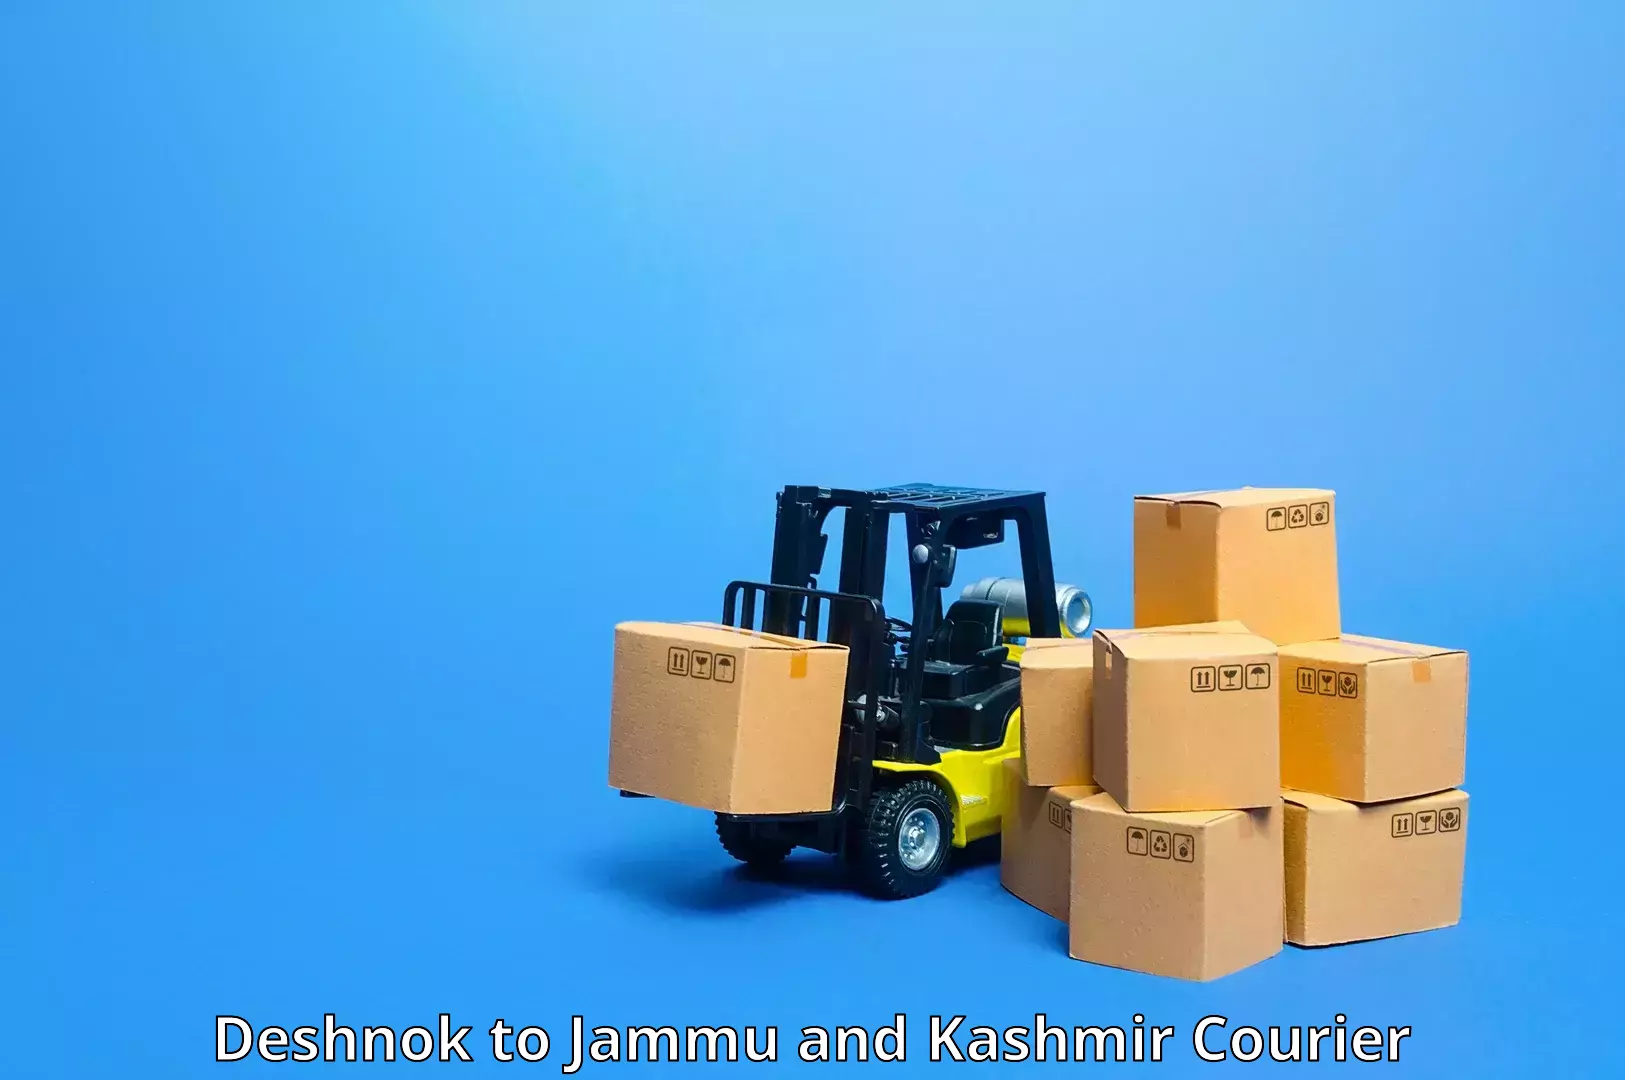 On-demand shipping options Deshnok to Jammu and Kashmir